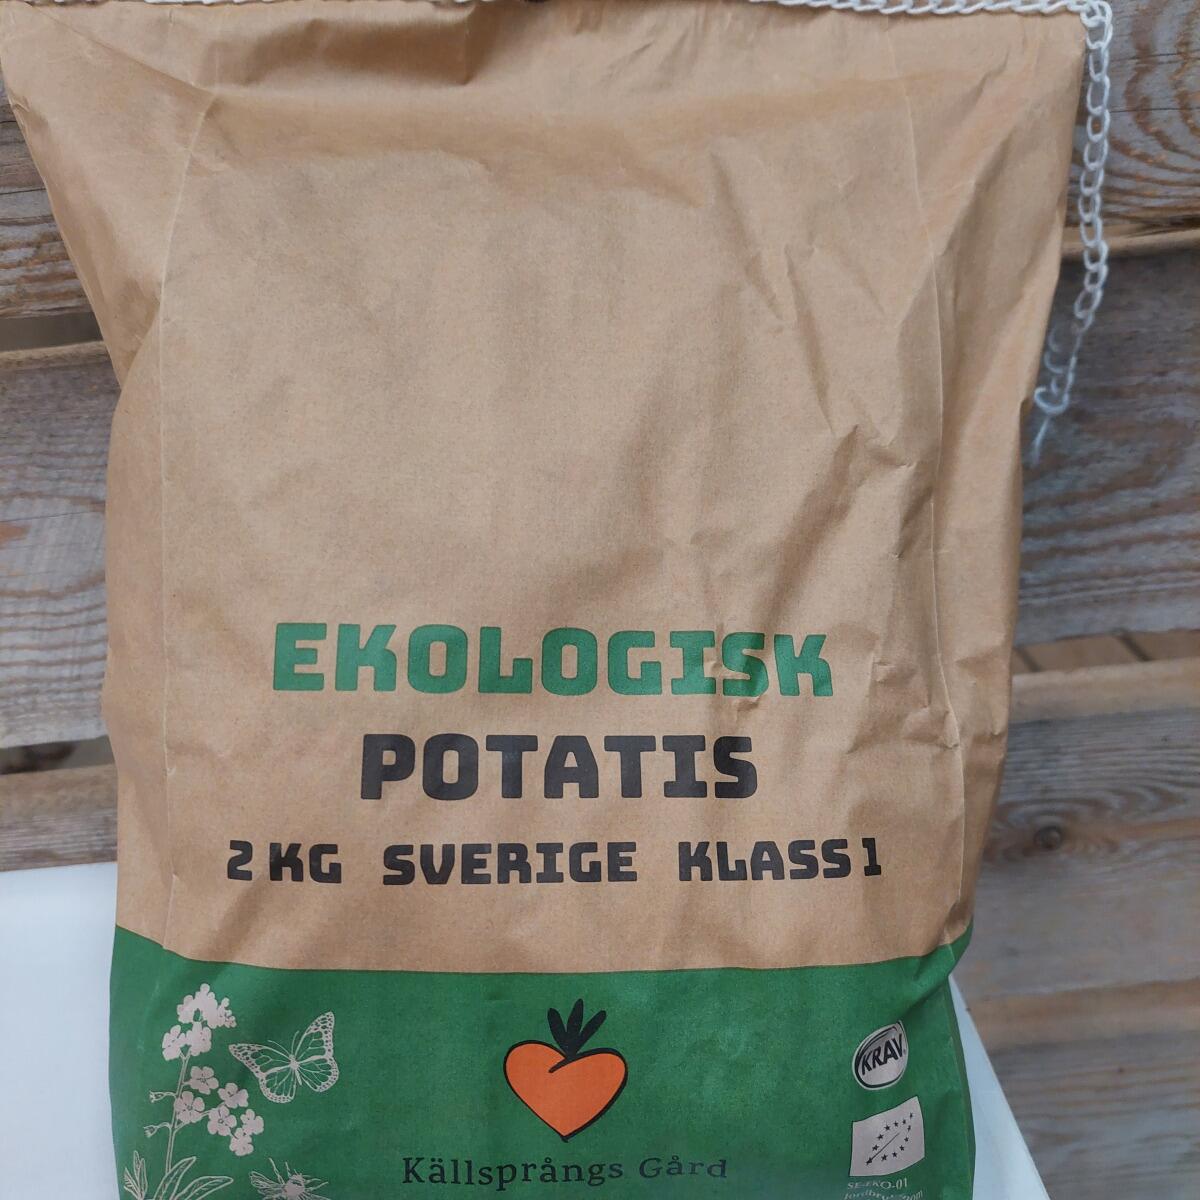 Källsprångs Gård's Kartoffeln 2 kg'